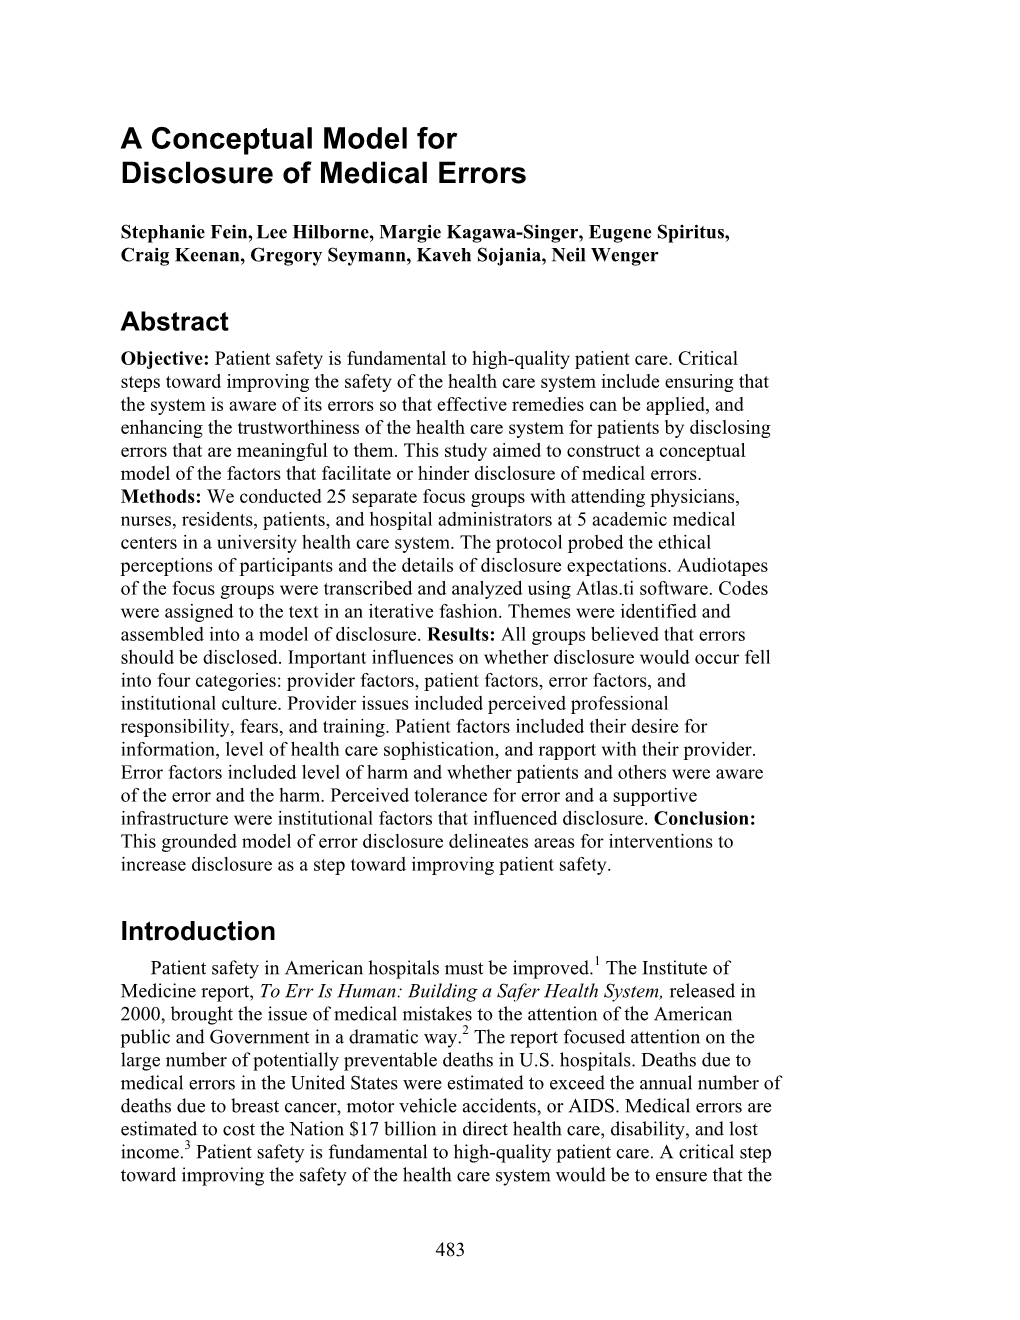 A Conceptual Model for Disclosure of Medical Errors